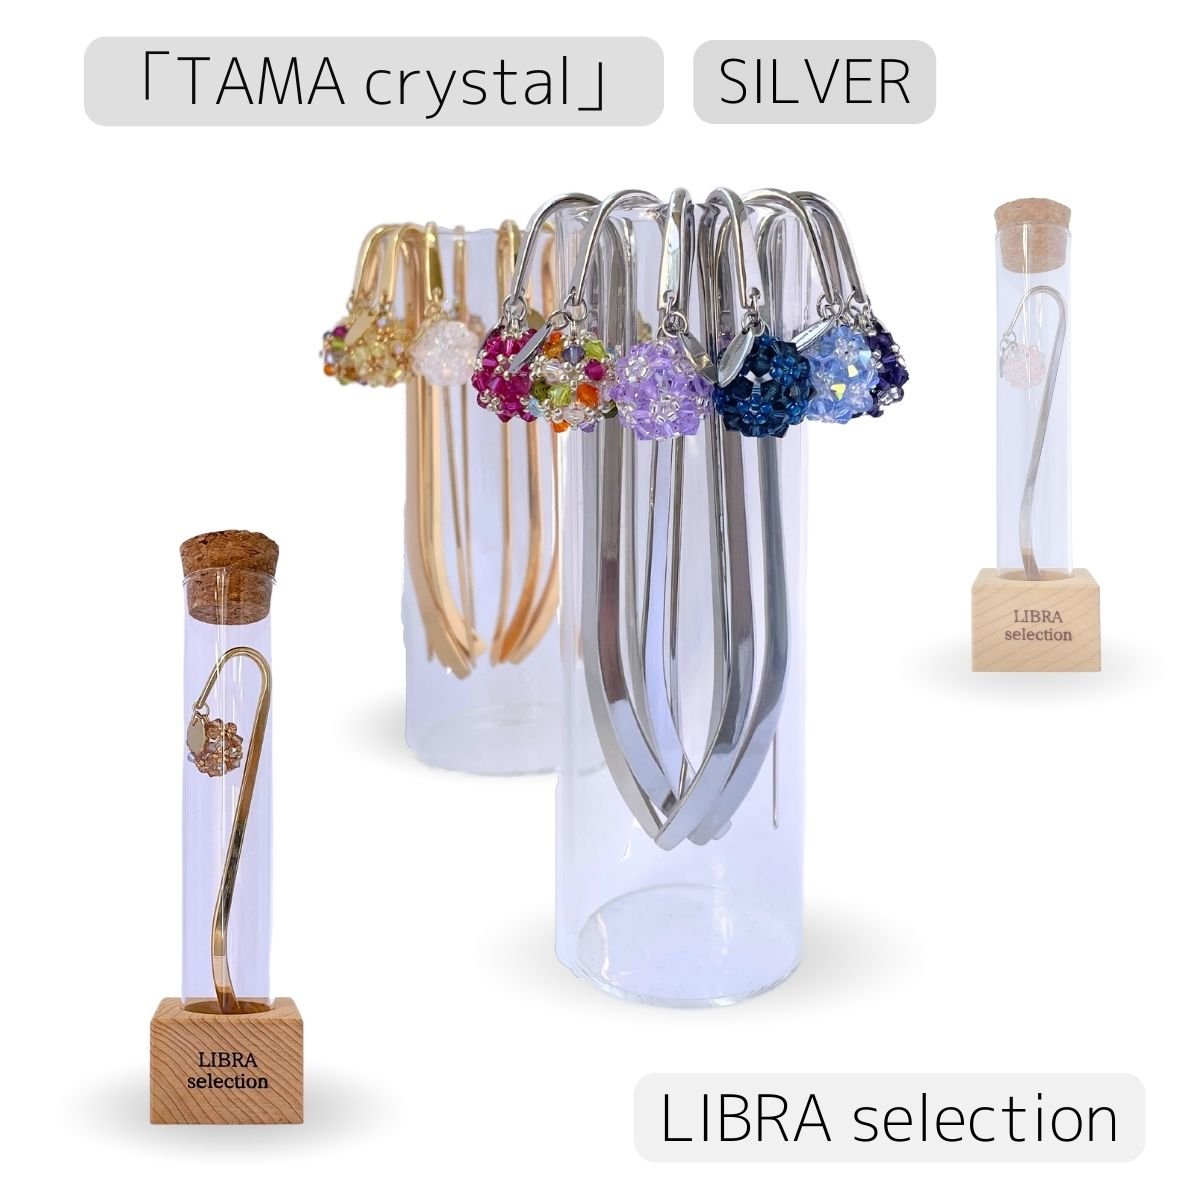 「TAMA  crystal」台座付き/シルバー/高級クリスタル・おしゃれブックマーカー/優れた浄化と邪気払い・願いを叶える力